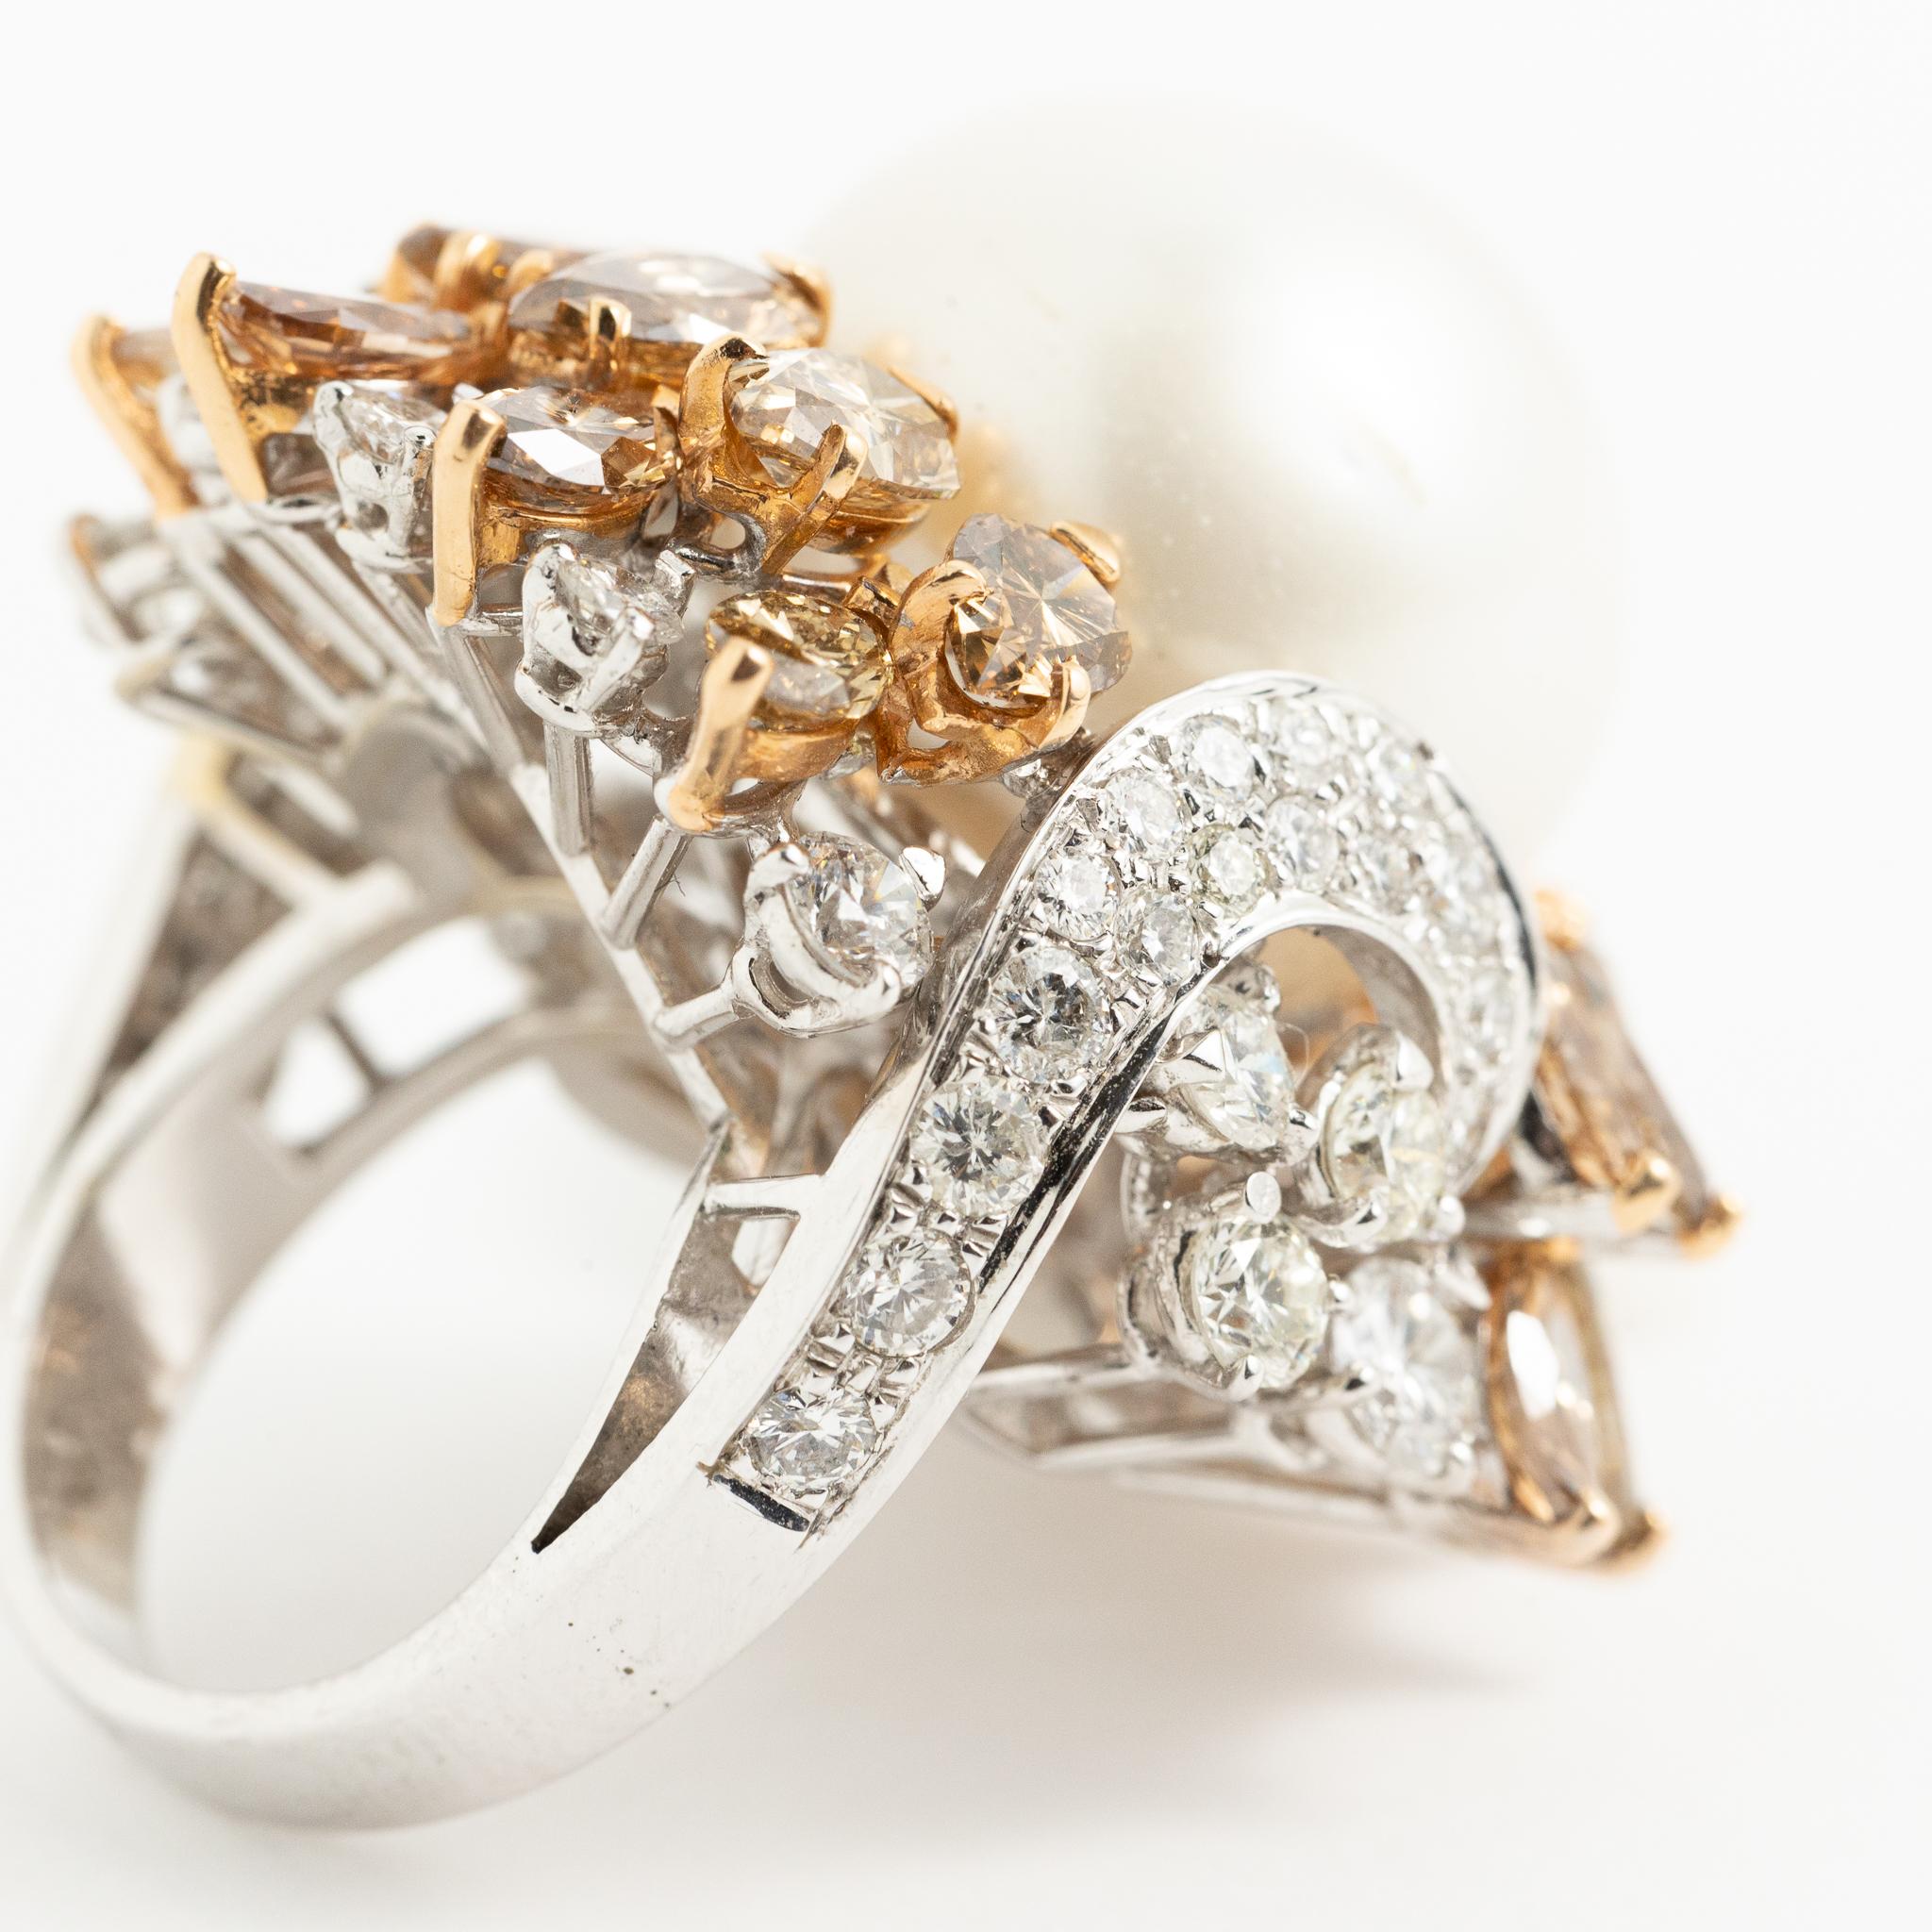 Fraleoni 18 Kt. White Gold Diamond Australian Pearl Cocktail Ring For Sale 5